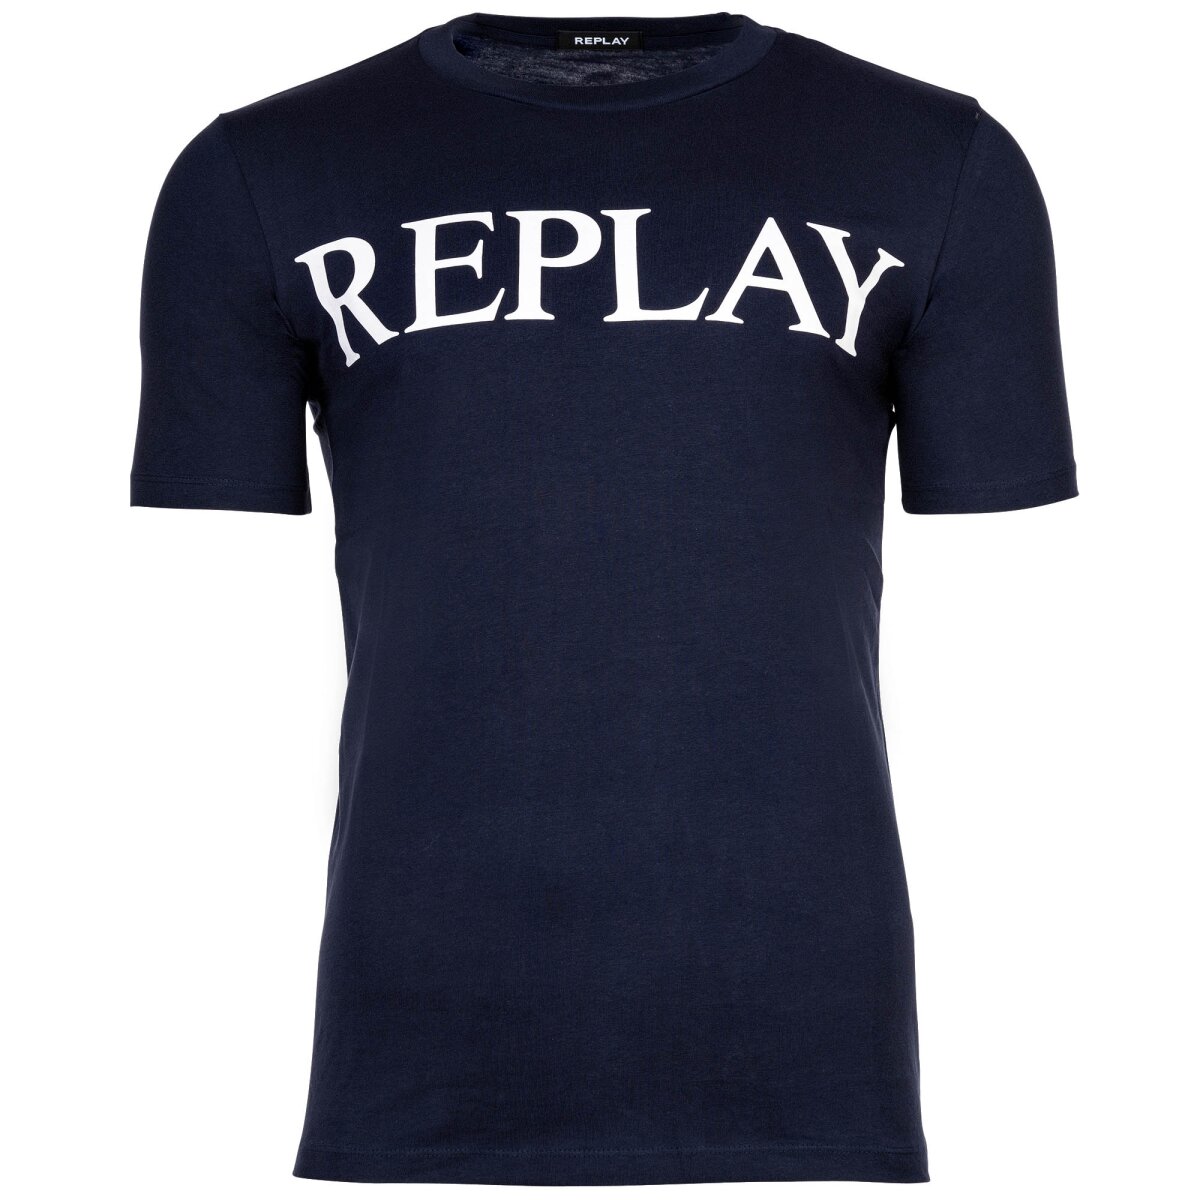 44,95 T-Shirt aus REPLAY mit Baumwolle € Logo-Print, Herren